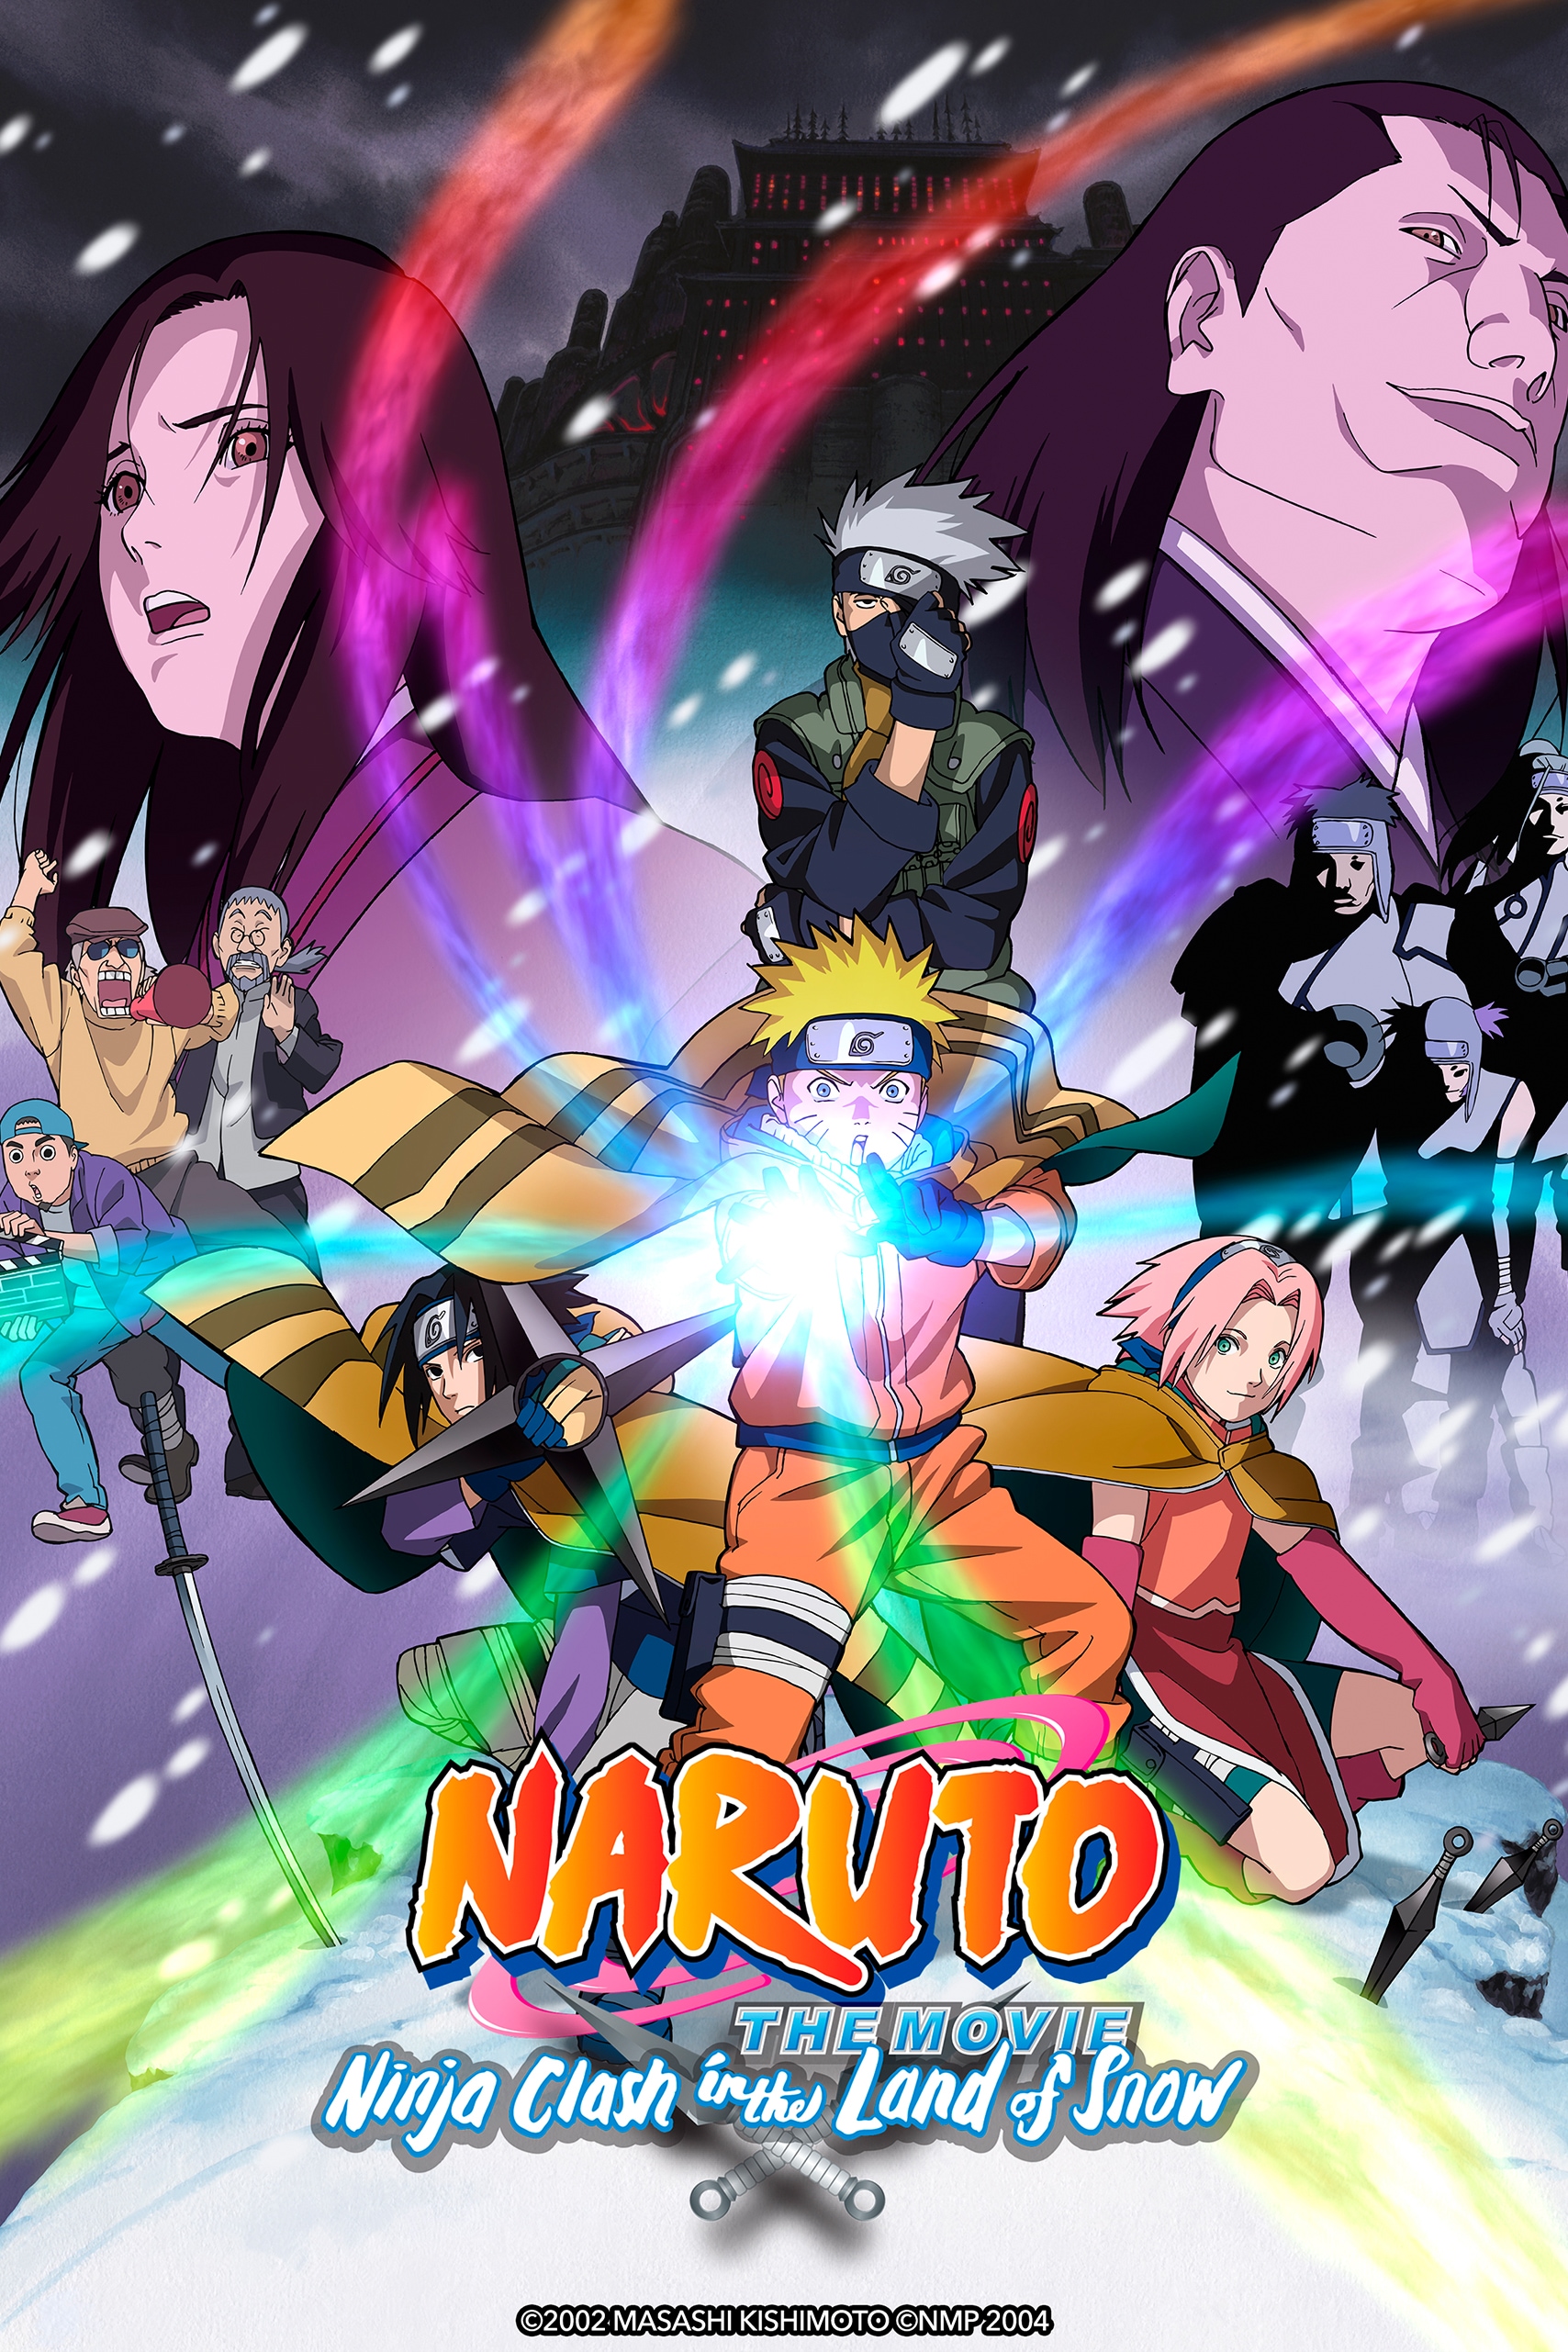 Claro video - Naruto debe esforzarse por convencer a